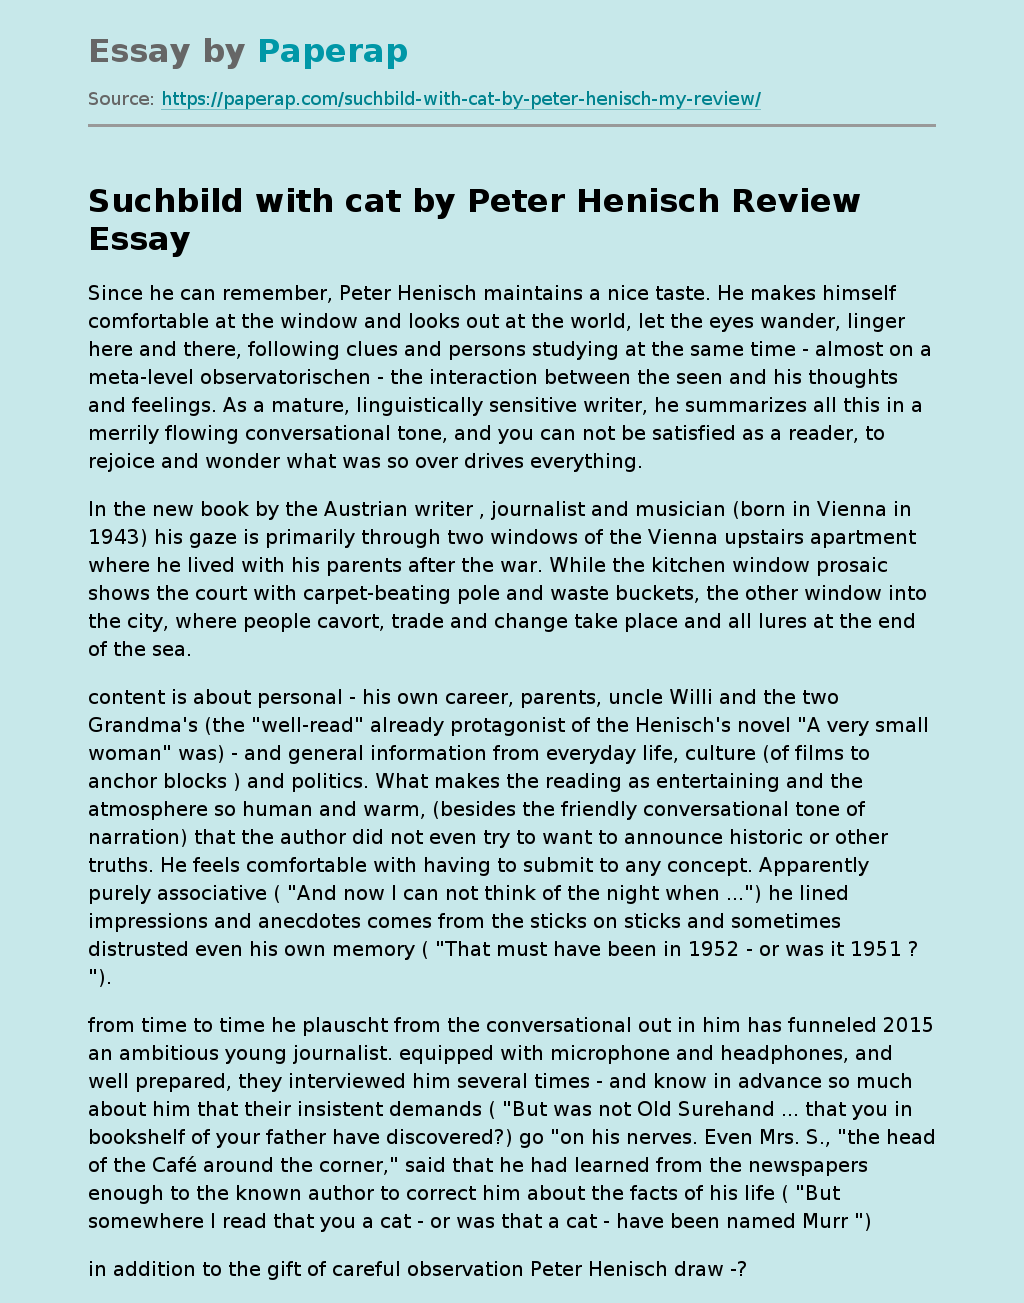 "Suchbild with cat" by Peter Henisch